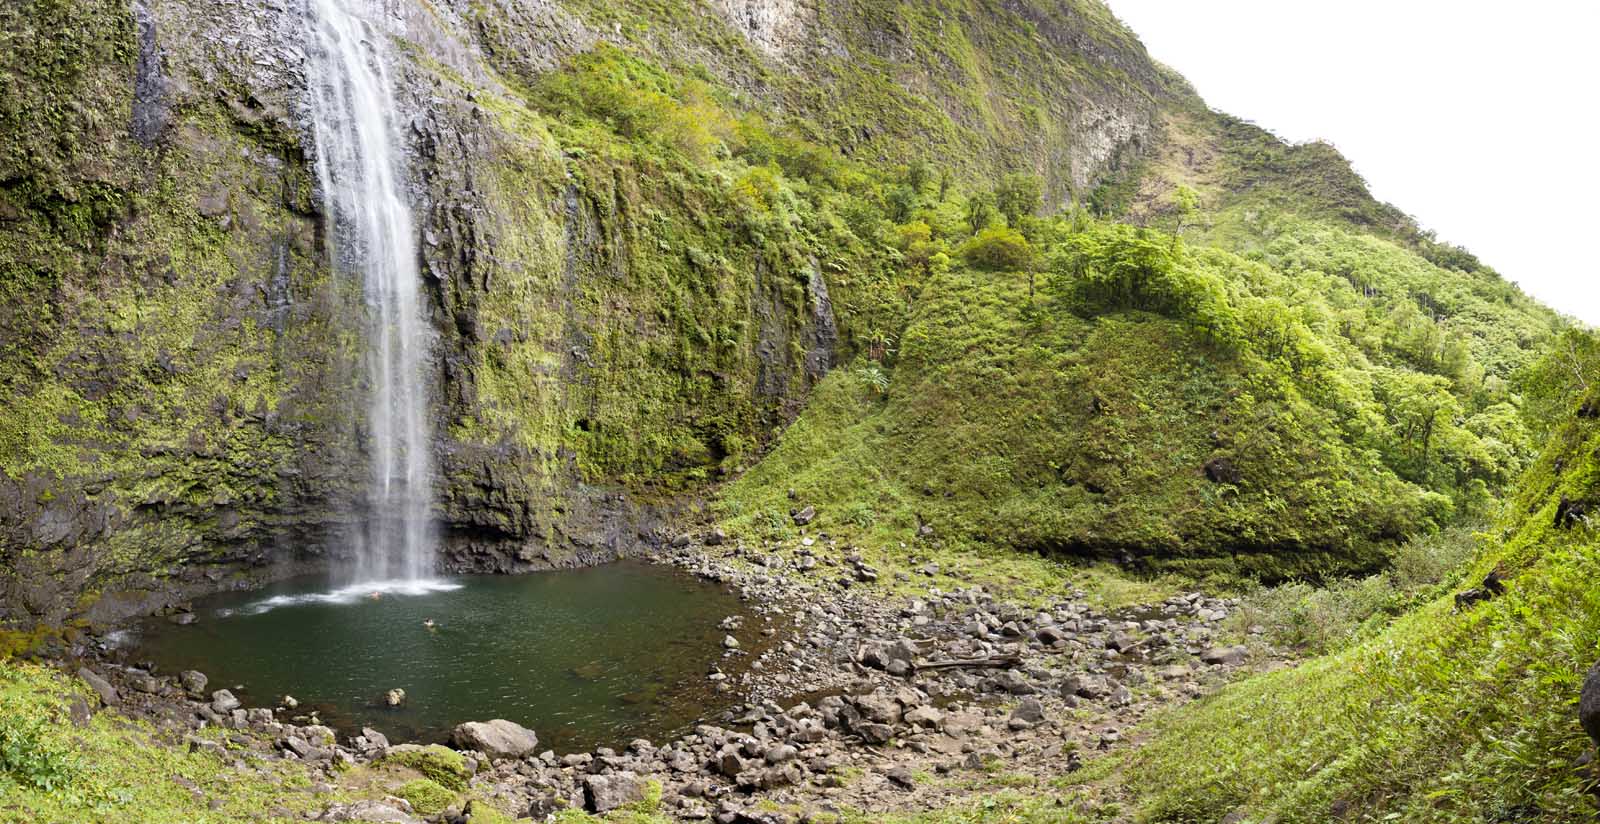 Hiking the Hanakapiai Falls Trail in Kauai Hawaii